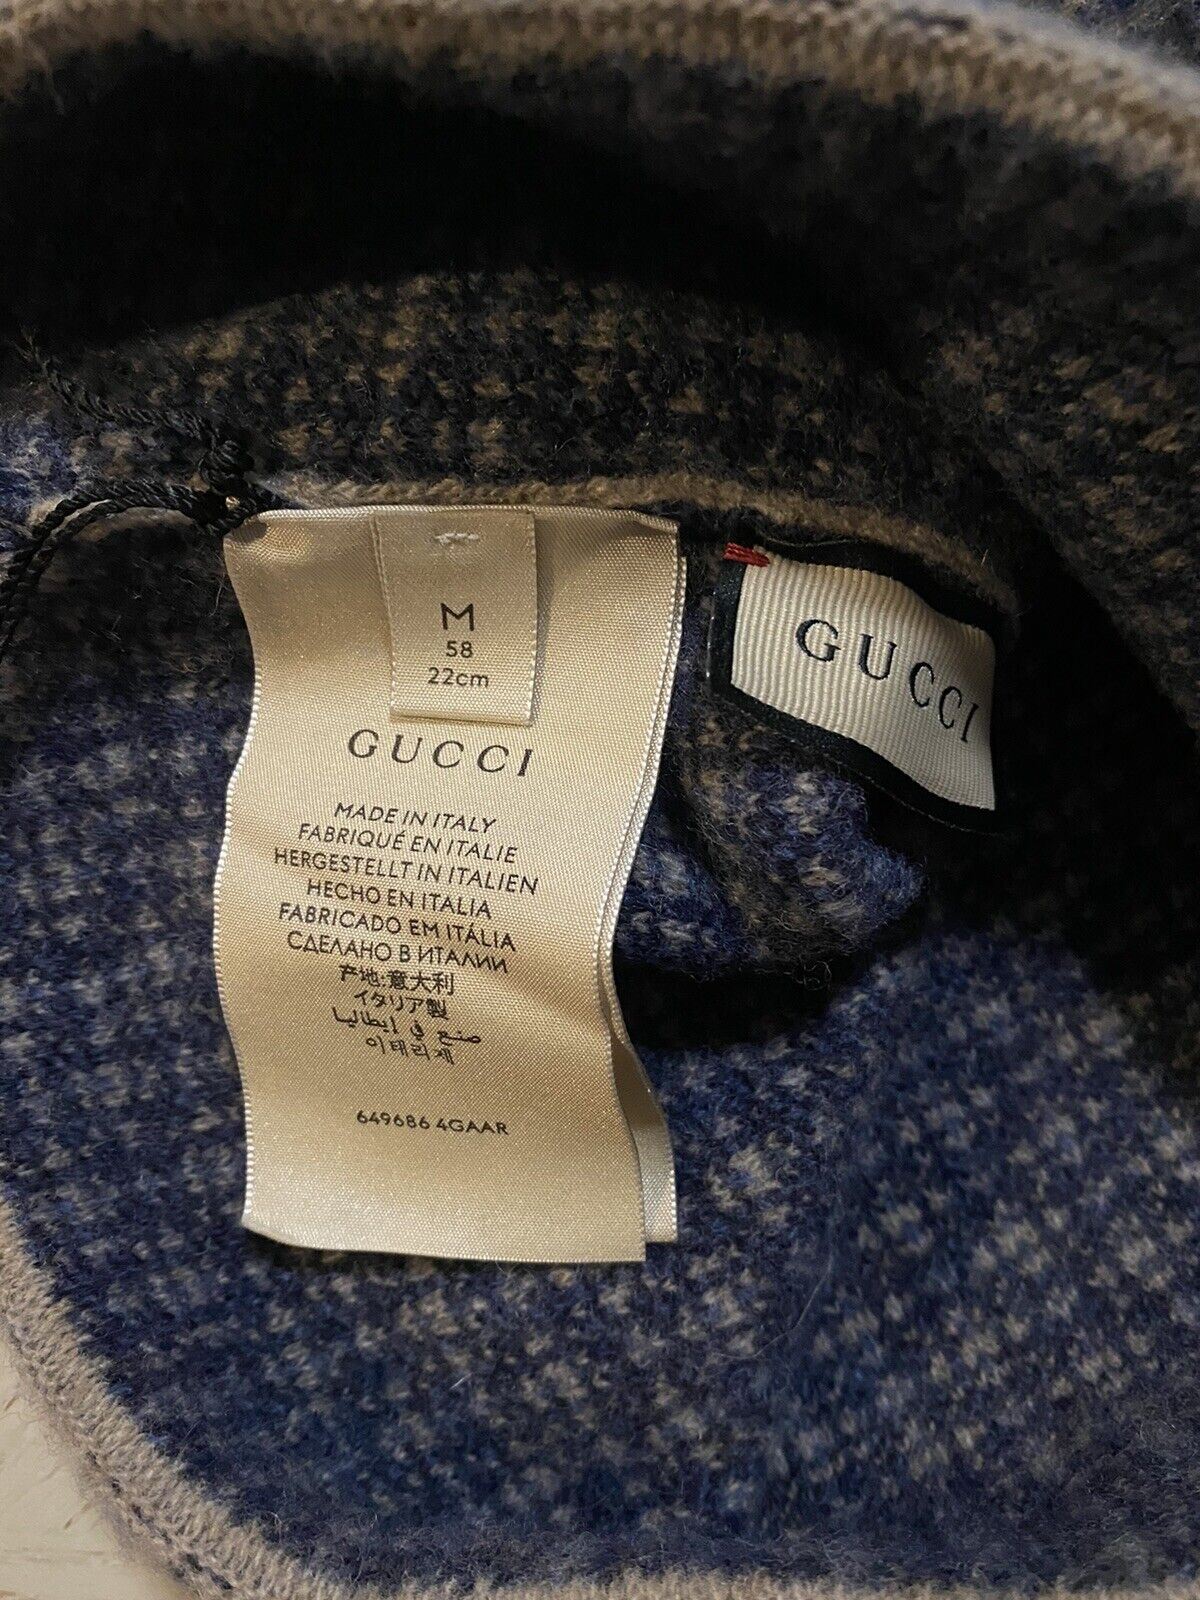 Neu mit Etikett: Gucci Beanie, Gucci-Monogramm-Mütze, braun/schwarz, Größe M, Italien